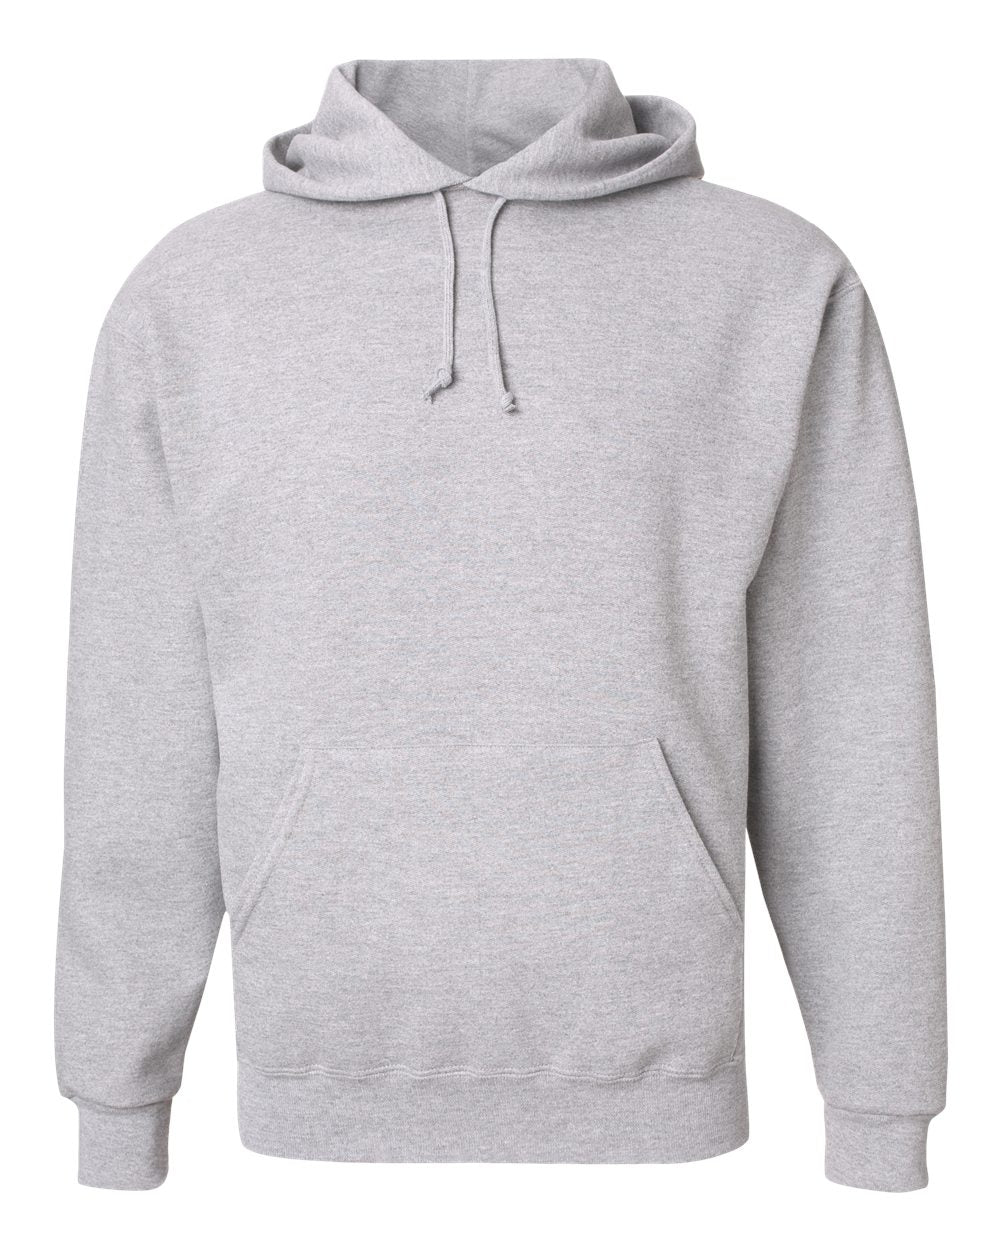 JERZEES - Super Sweats NuBlend® Hooded Sweatshirt Ash - 4997MR